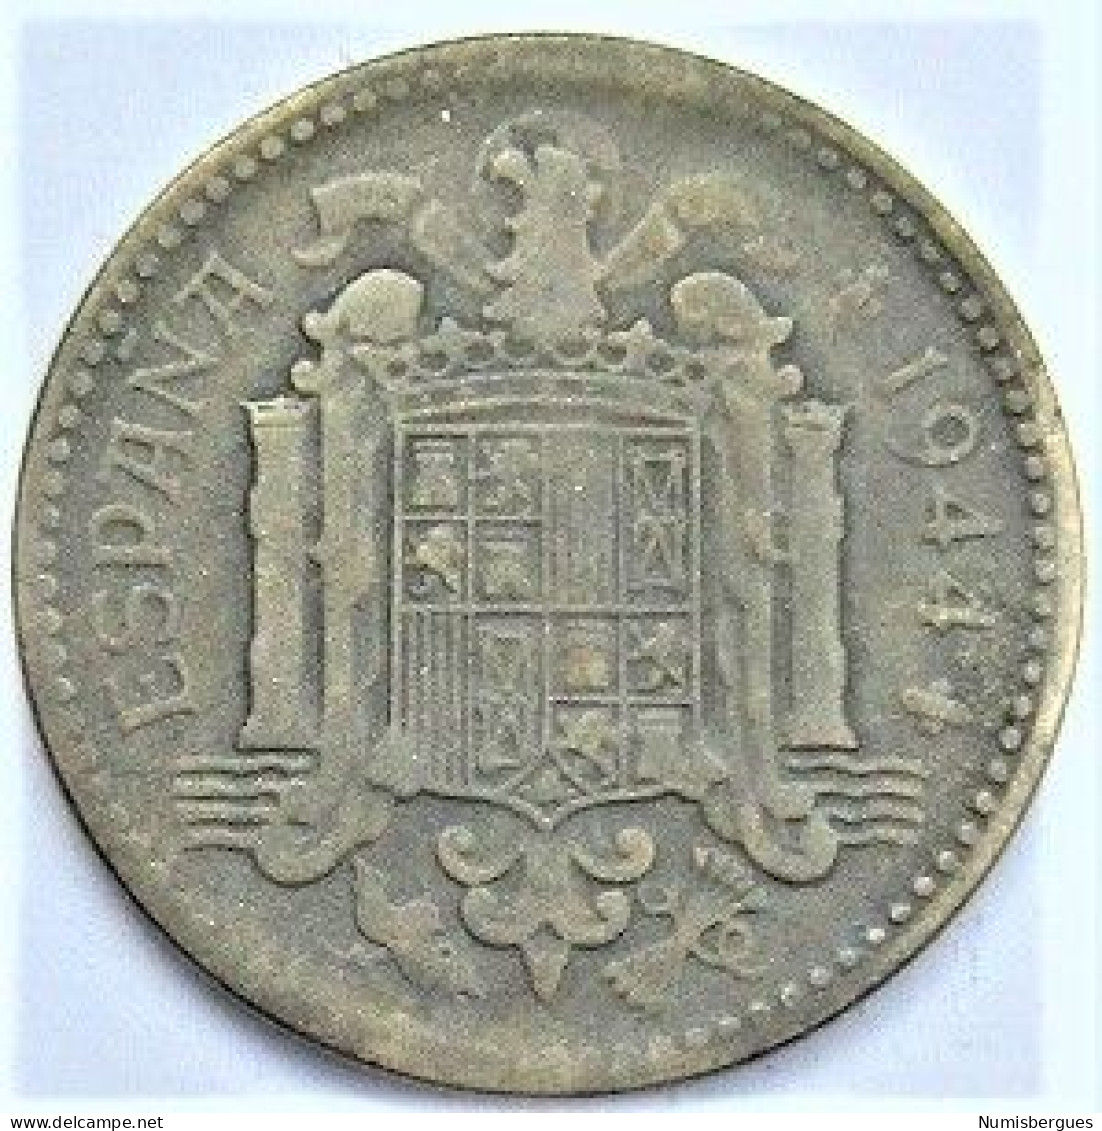 Pièce De Monnaie 1 Peseta 1944 - 1 Peseta